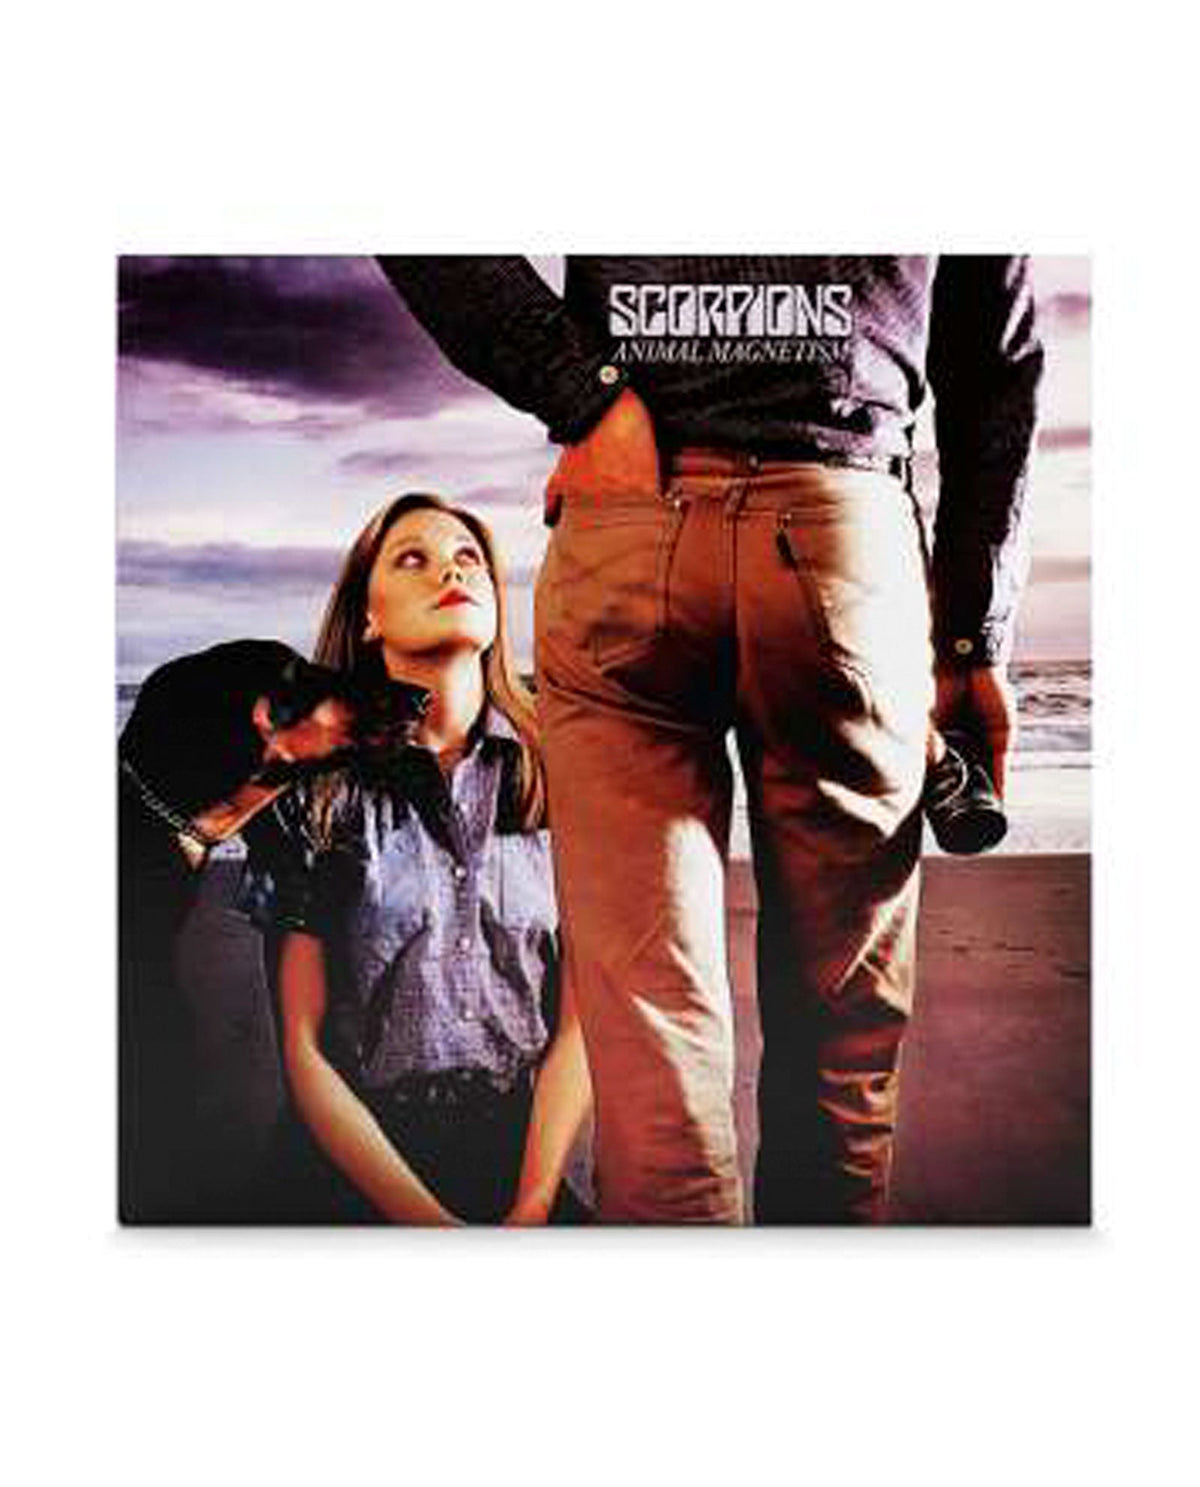 Scorpions - LP Vinilo "Animal Magnetism" - D2fy · Rocktud - Rocktud